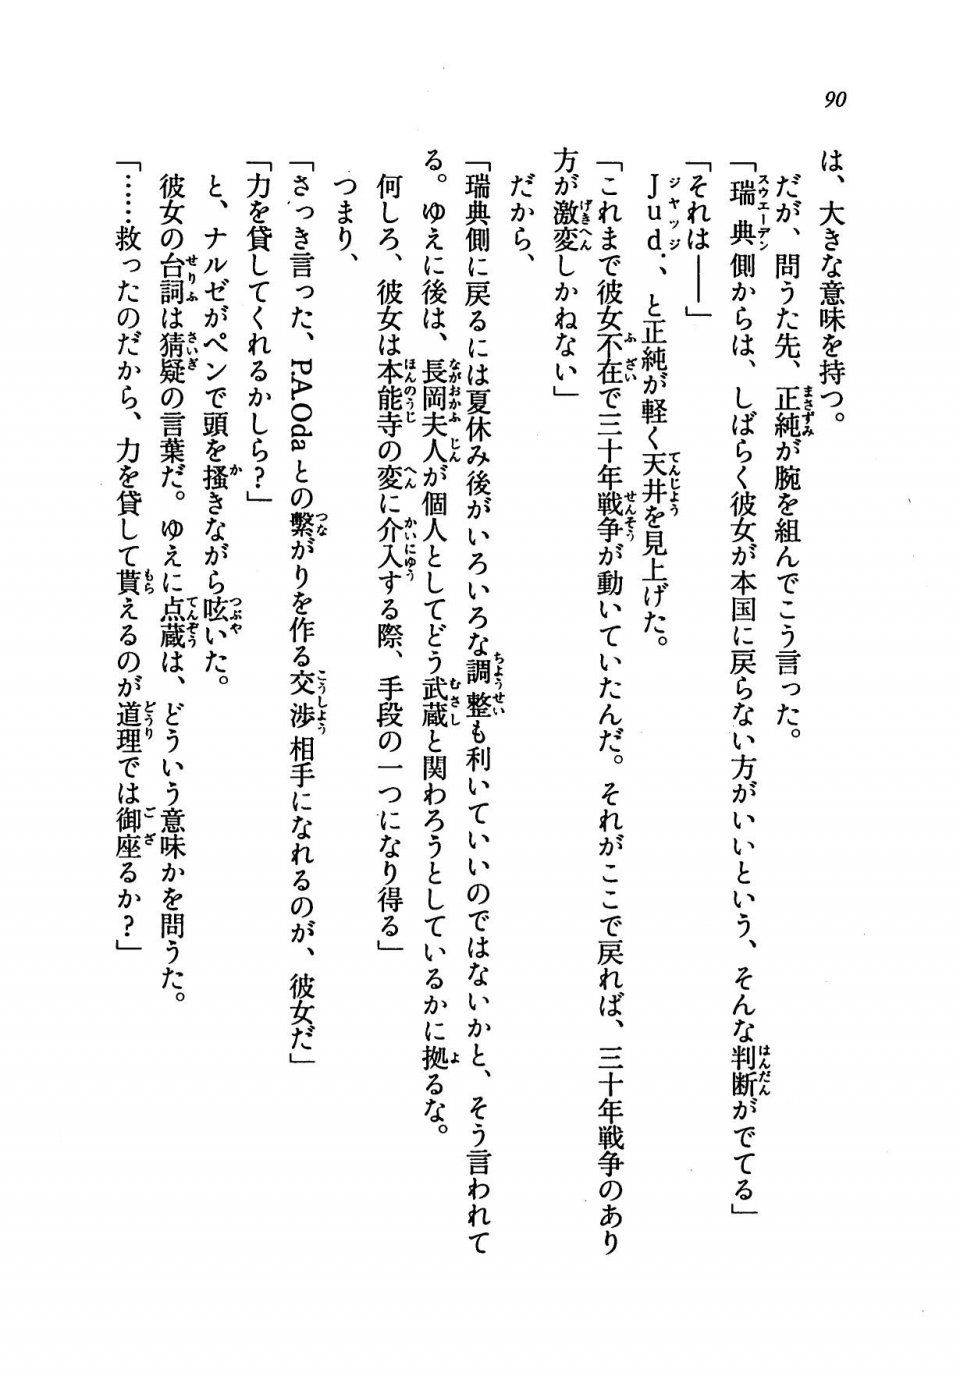 Kyoukai Senjou no Horizon LN Vol 19(8A) - Photo #90